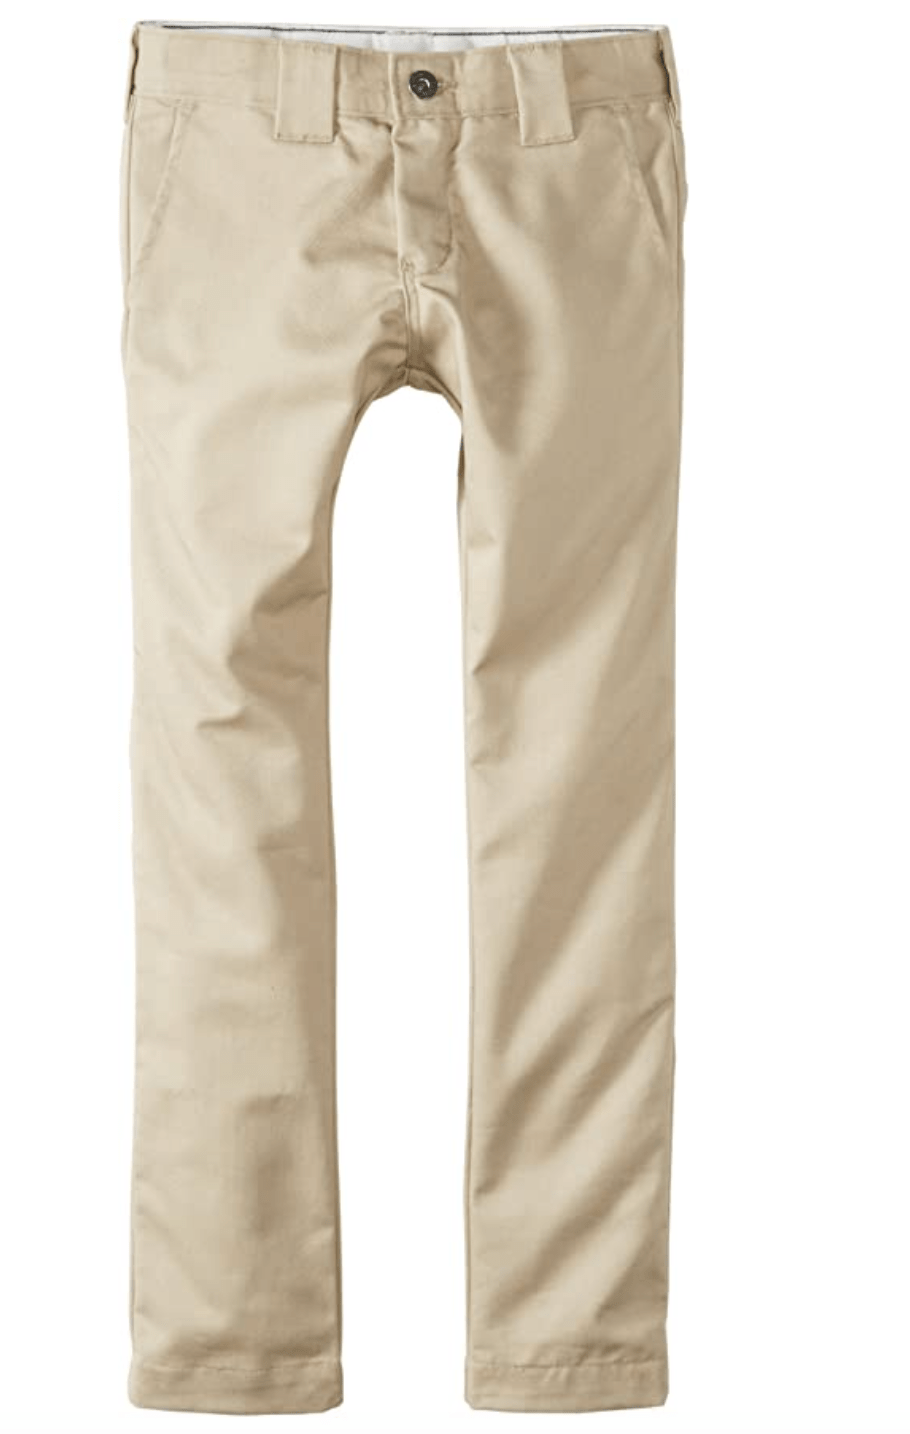 khaki pants for kids